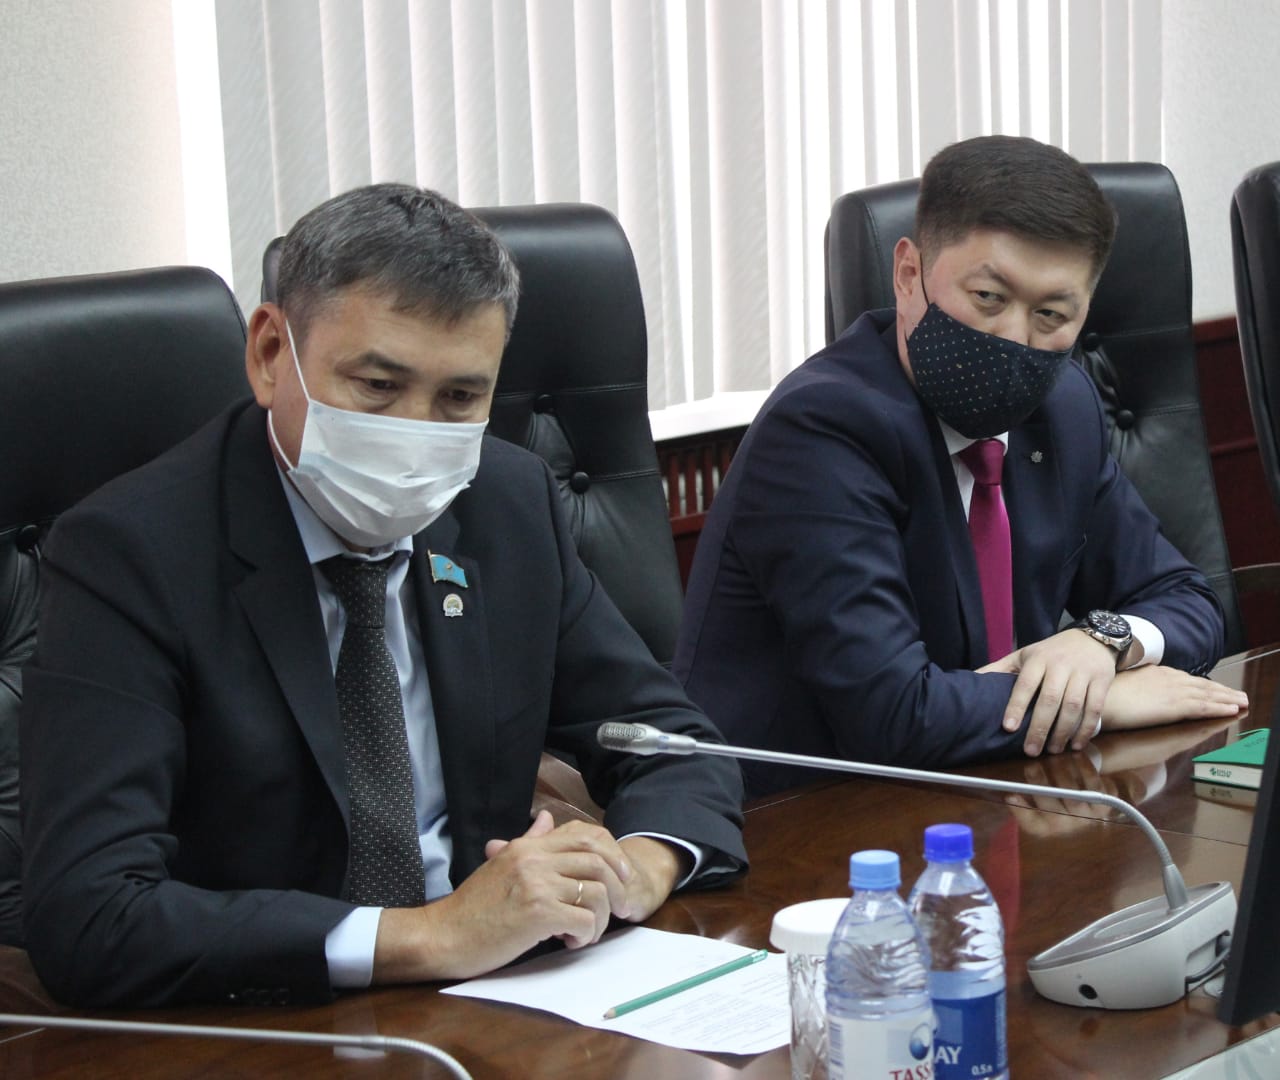 Павлодар кәсіпкерлер палатасының басшысы «Қазақстан алюминийі» АҚ-мен өңір компанияларымен қызметтестік сұрақтарын талқылады